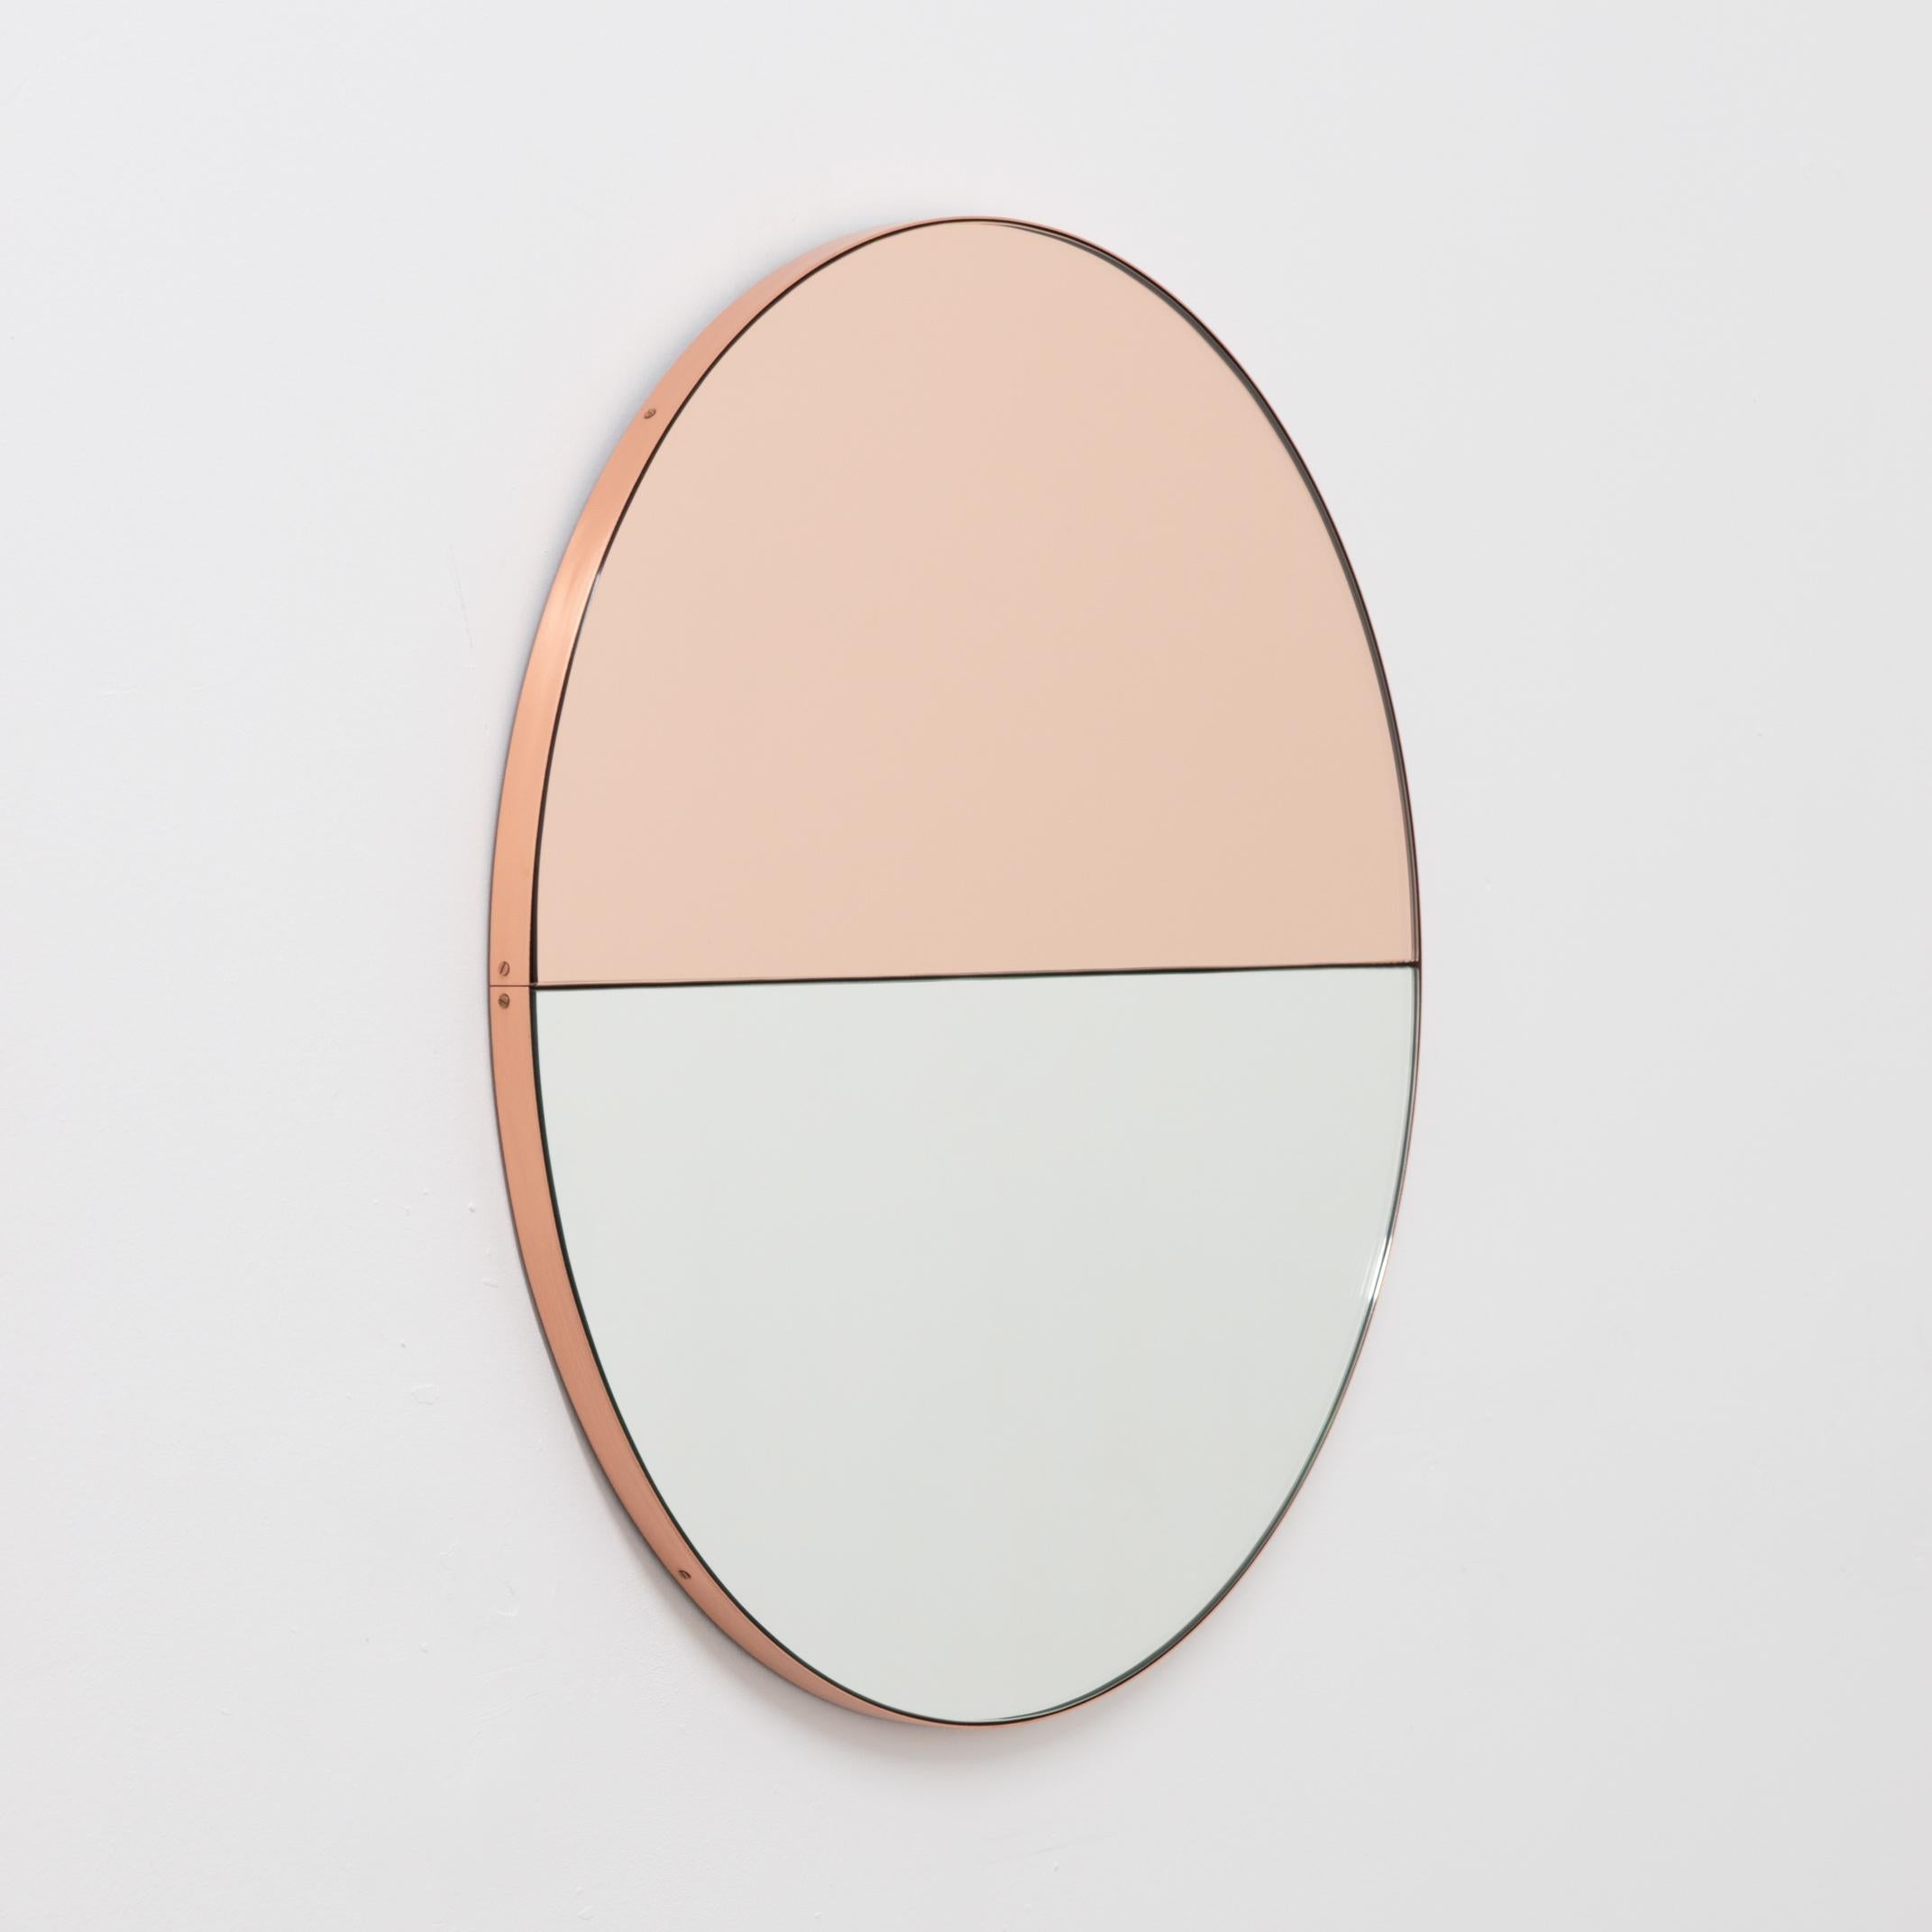 Britannique Miroir rond minimaliste Orbis Dualis teinté or rose mélangé, cadre en cuivre, régulier en vente